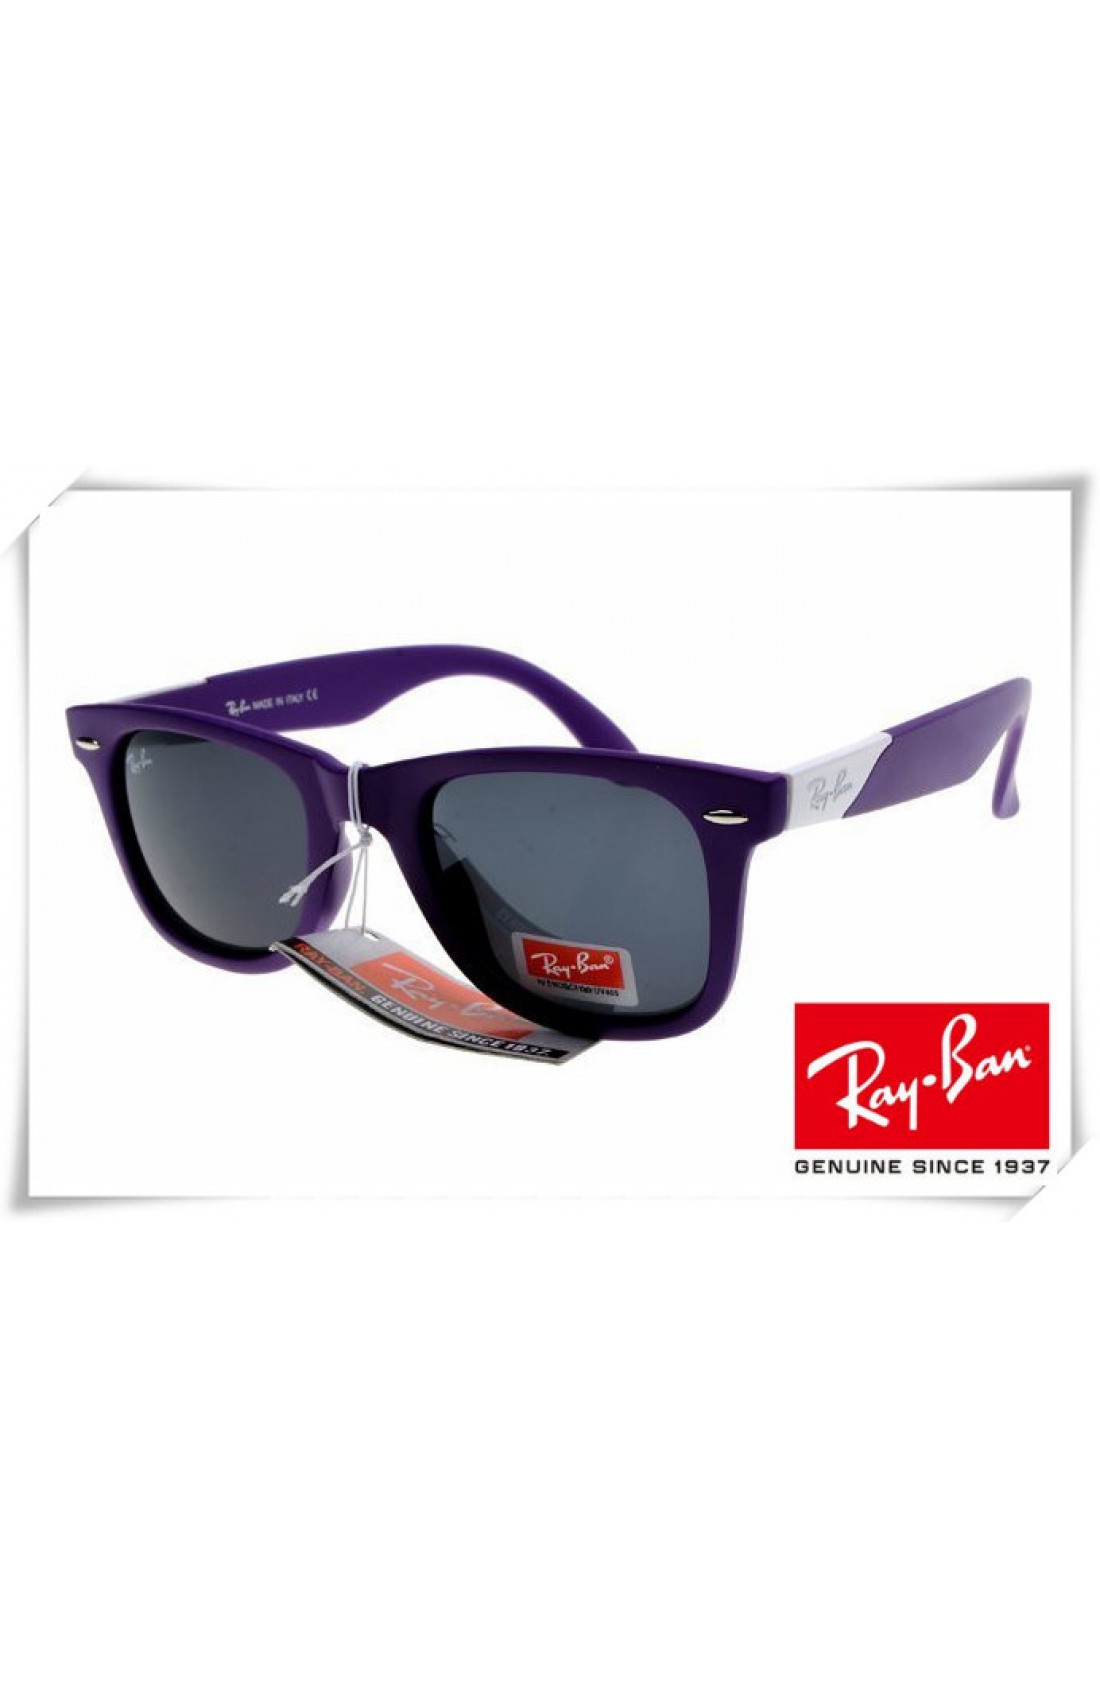 ray ban wayfarer purple frame